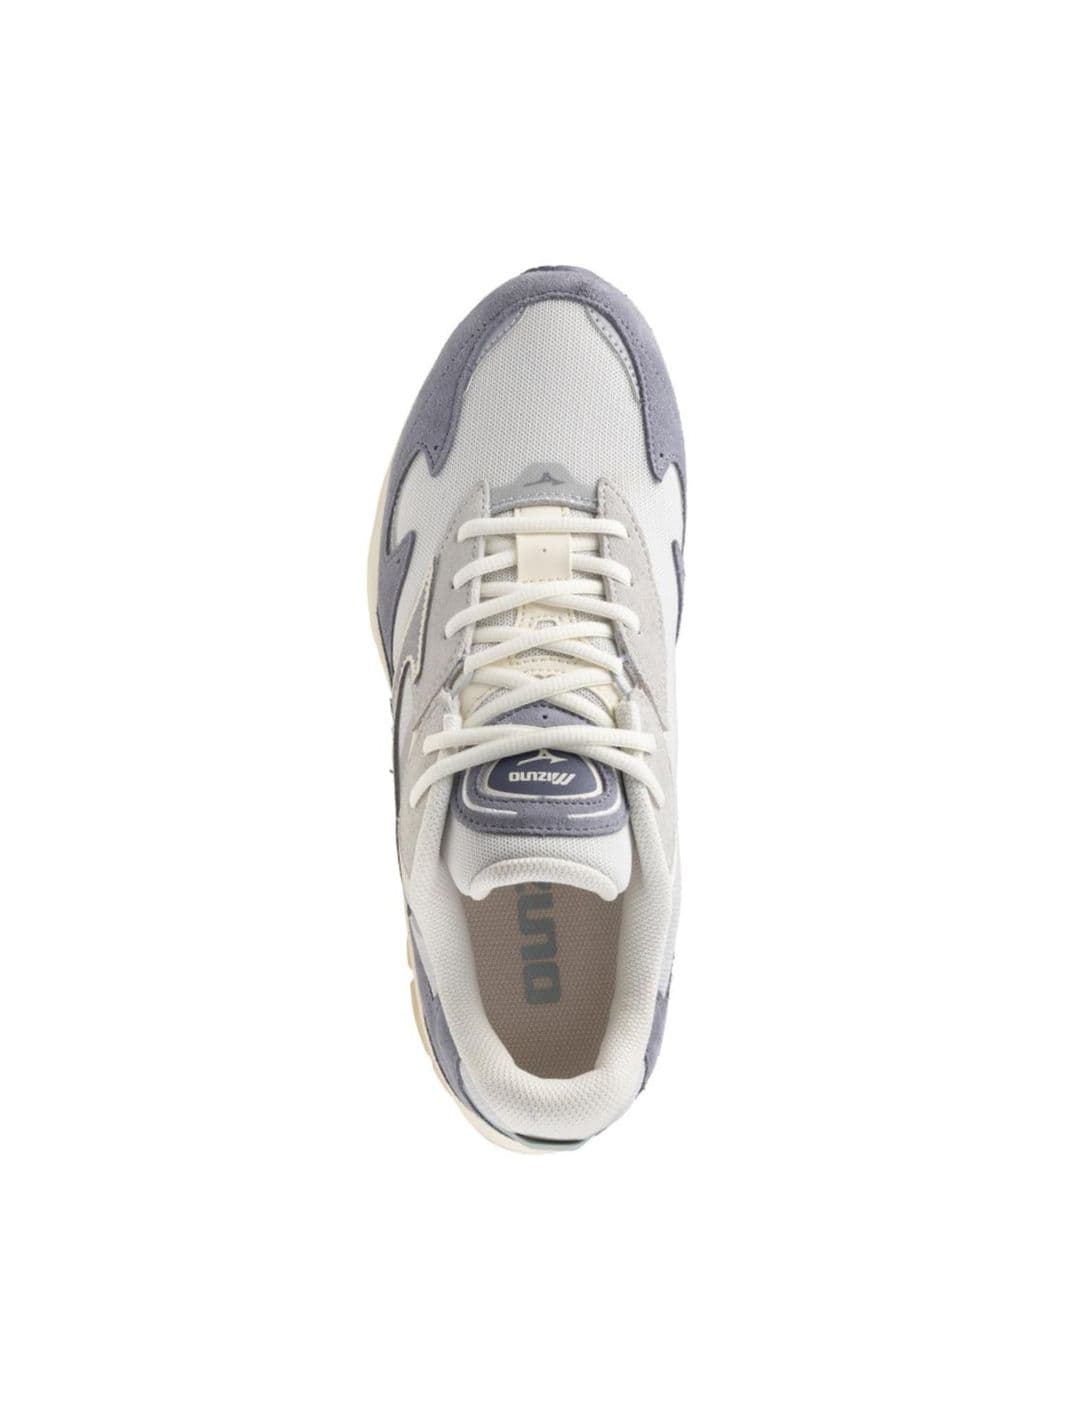 Mizuno Shoes Sneakers | Wave Rider 8 Blue/Quicksilver/Nimbus